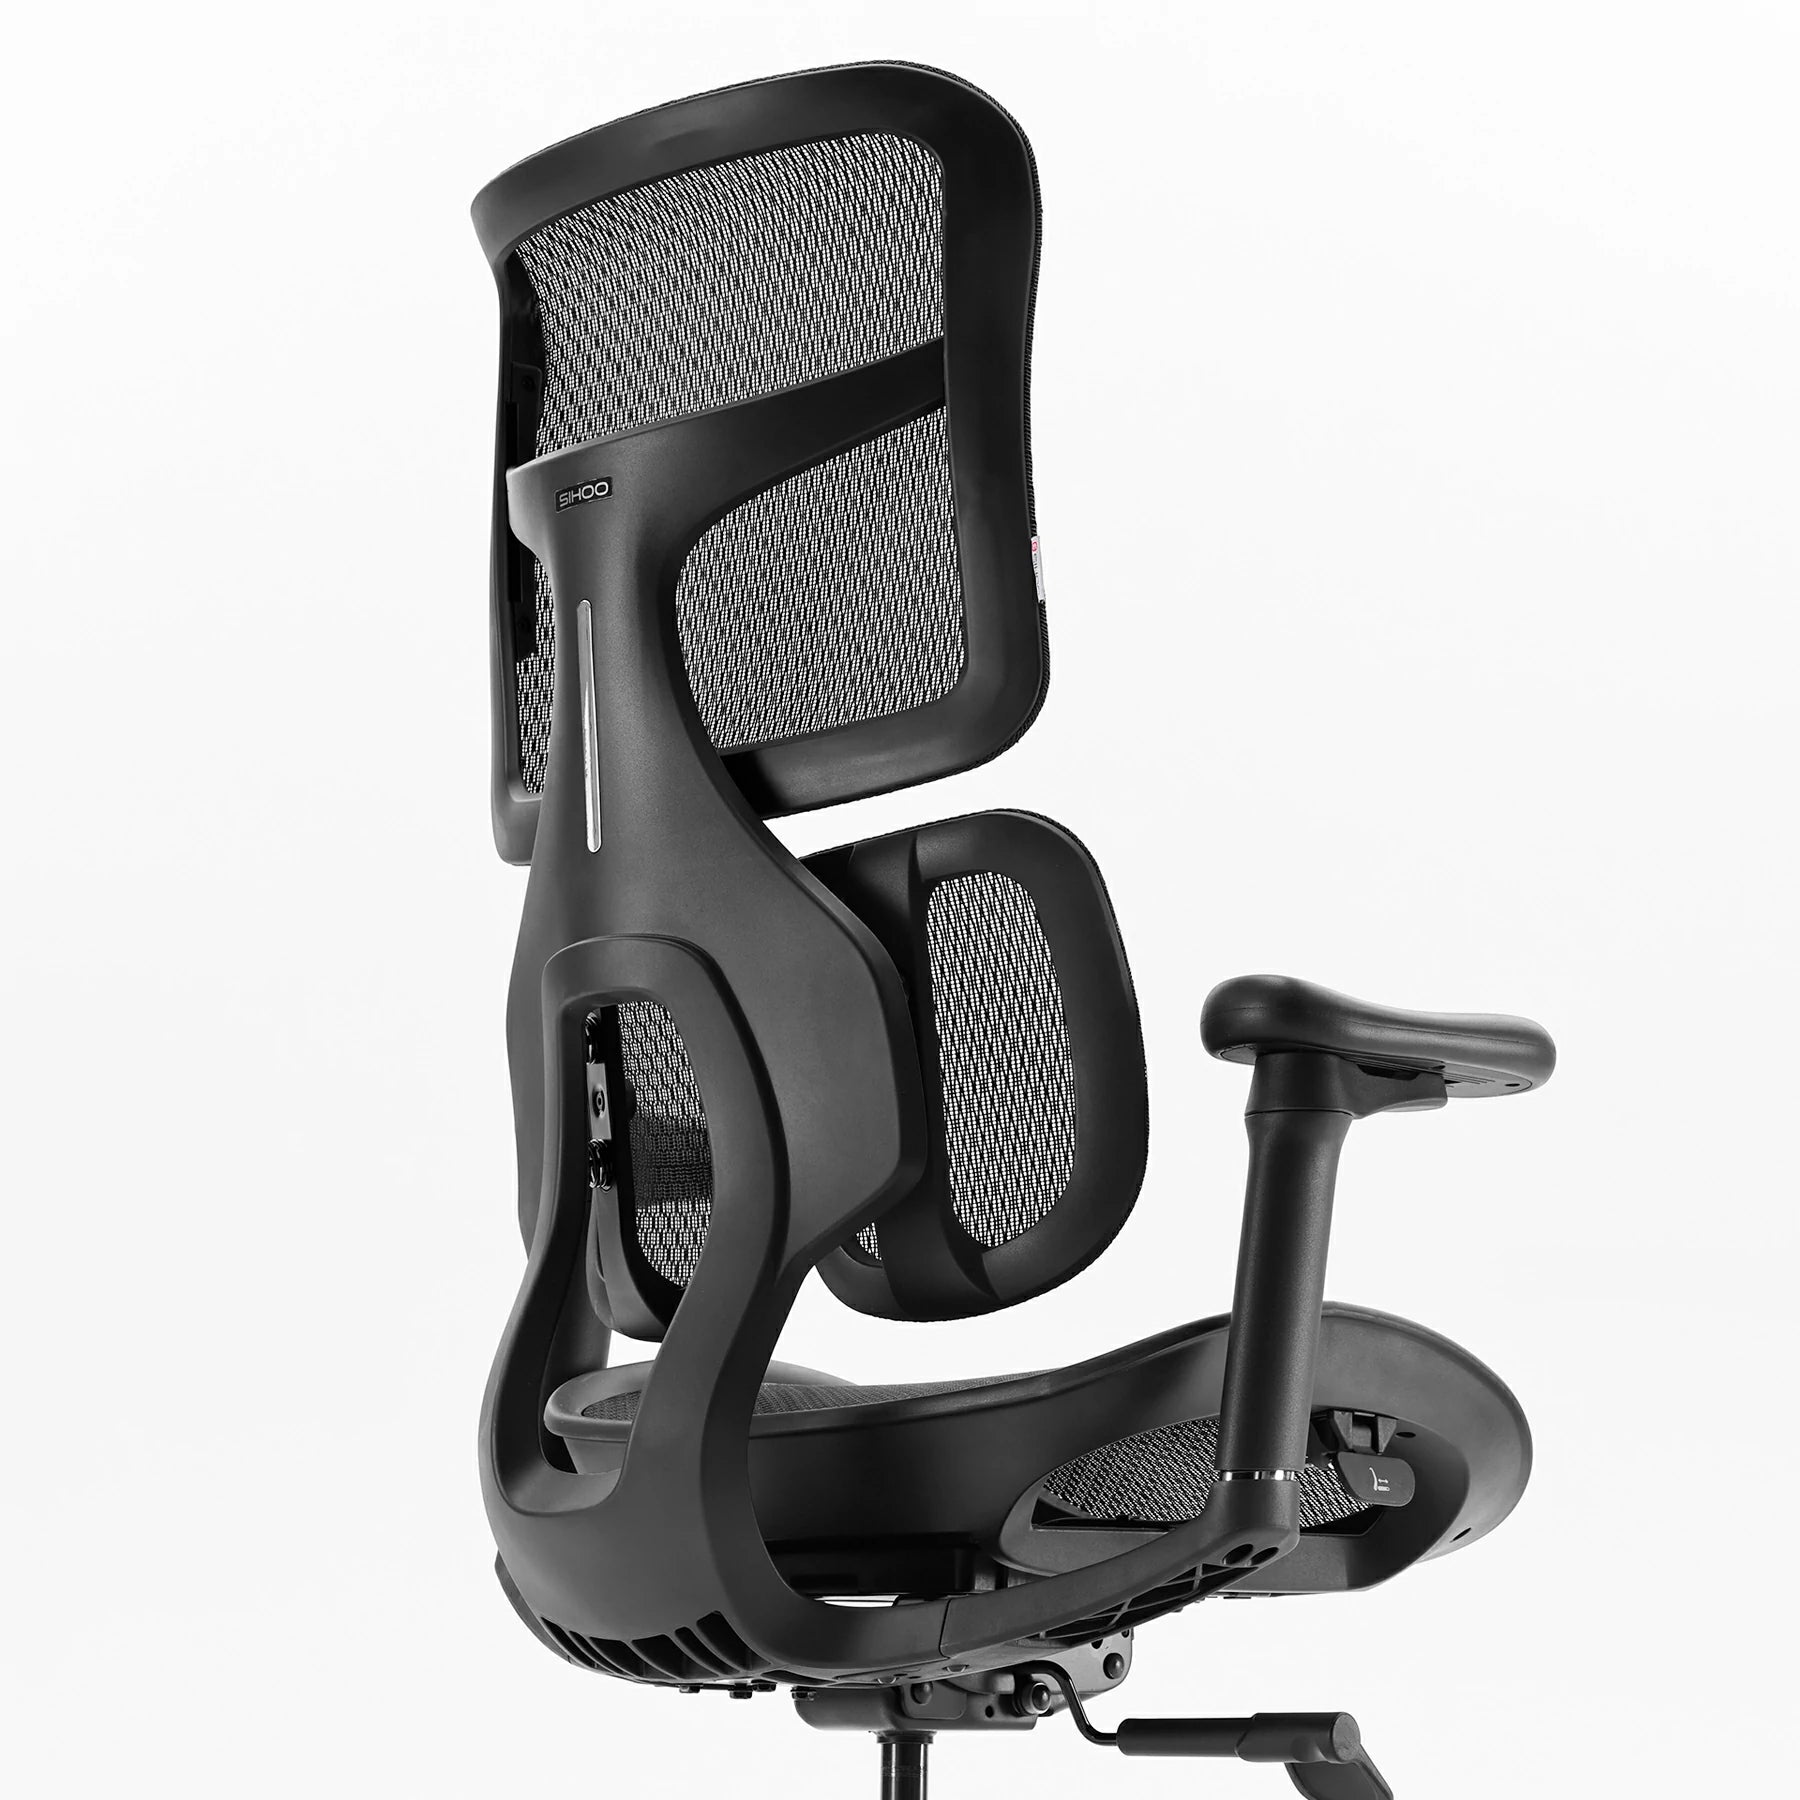 <tc>(nuova) Sihoo Doro S100 sedia ergonomica per ufficio con doppio supporto dinamico lombare</tc>